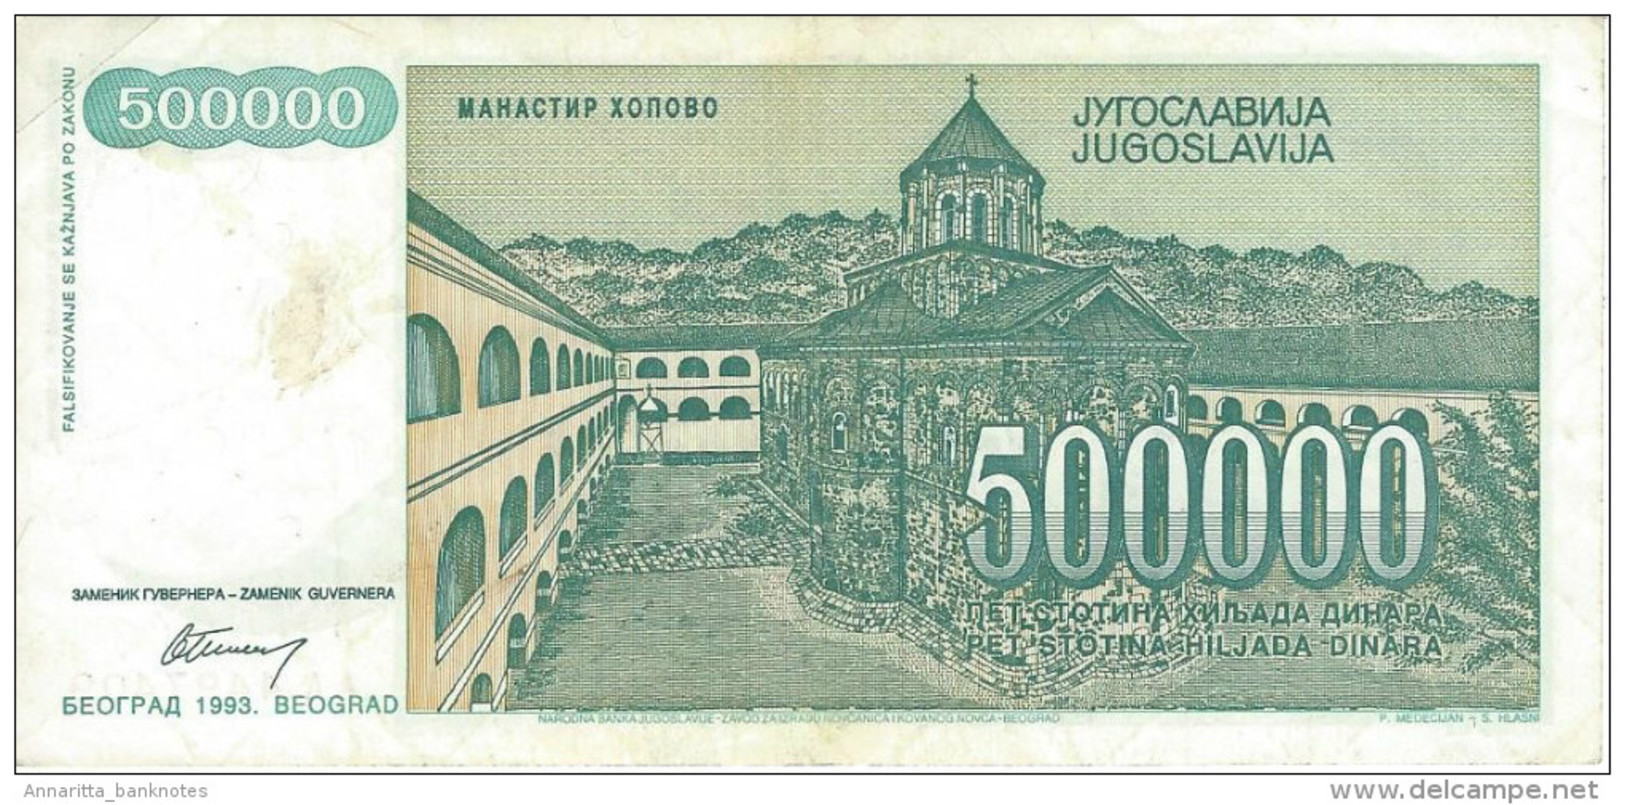 YUGOSLAVIA 500000 DINARA 1993 P-131 CIRC  [ YU131circ ] - Yugoslavia